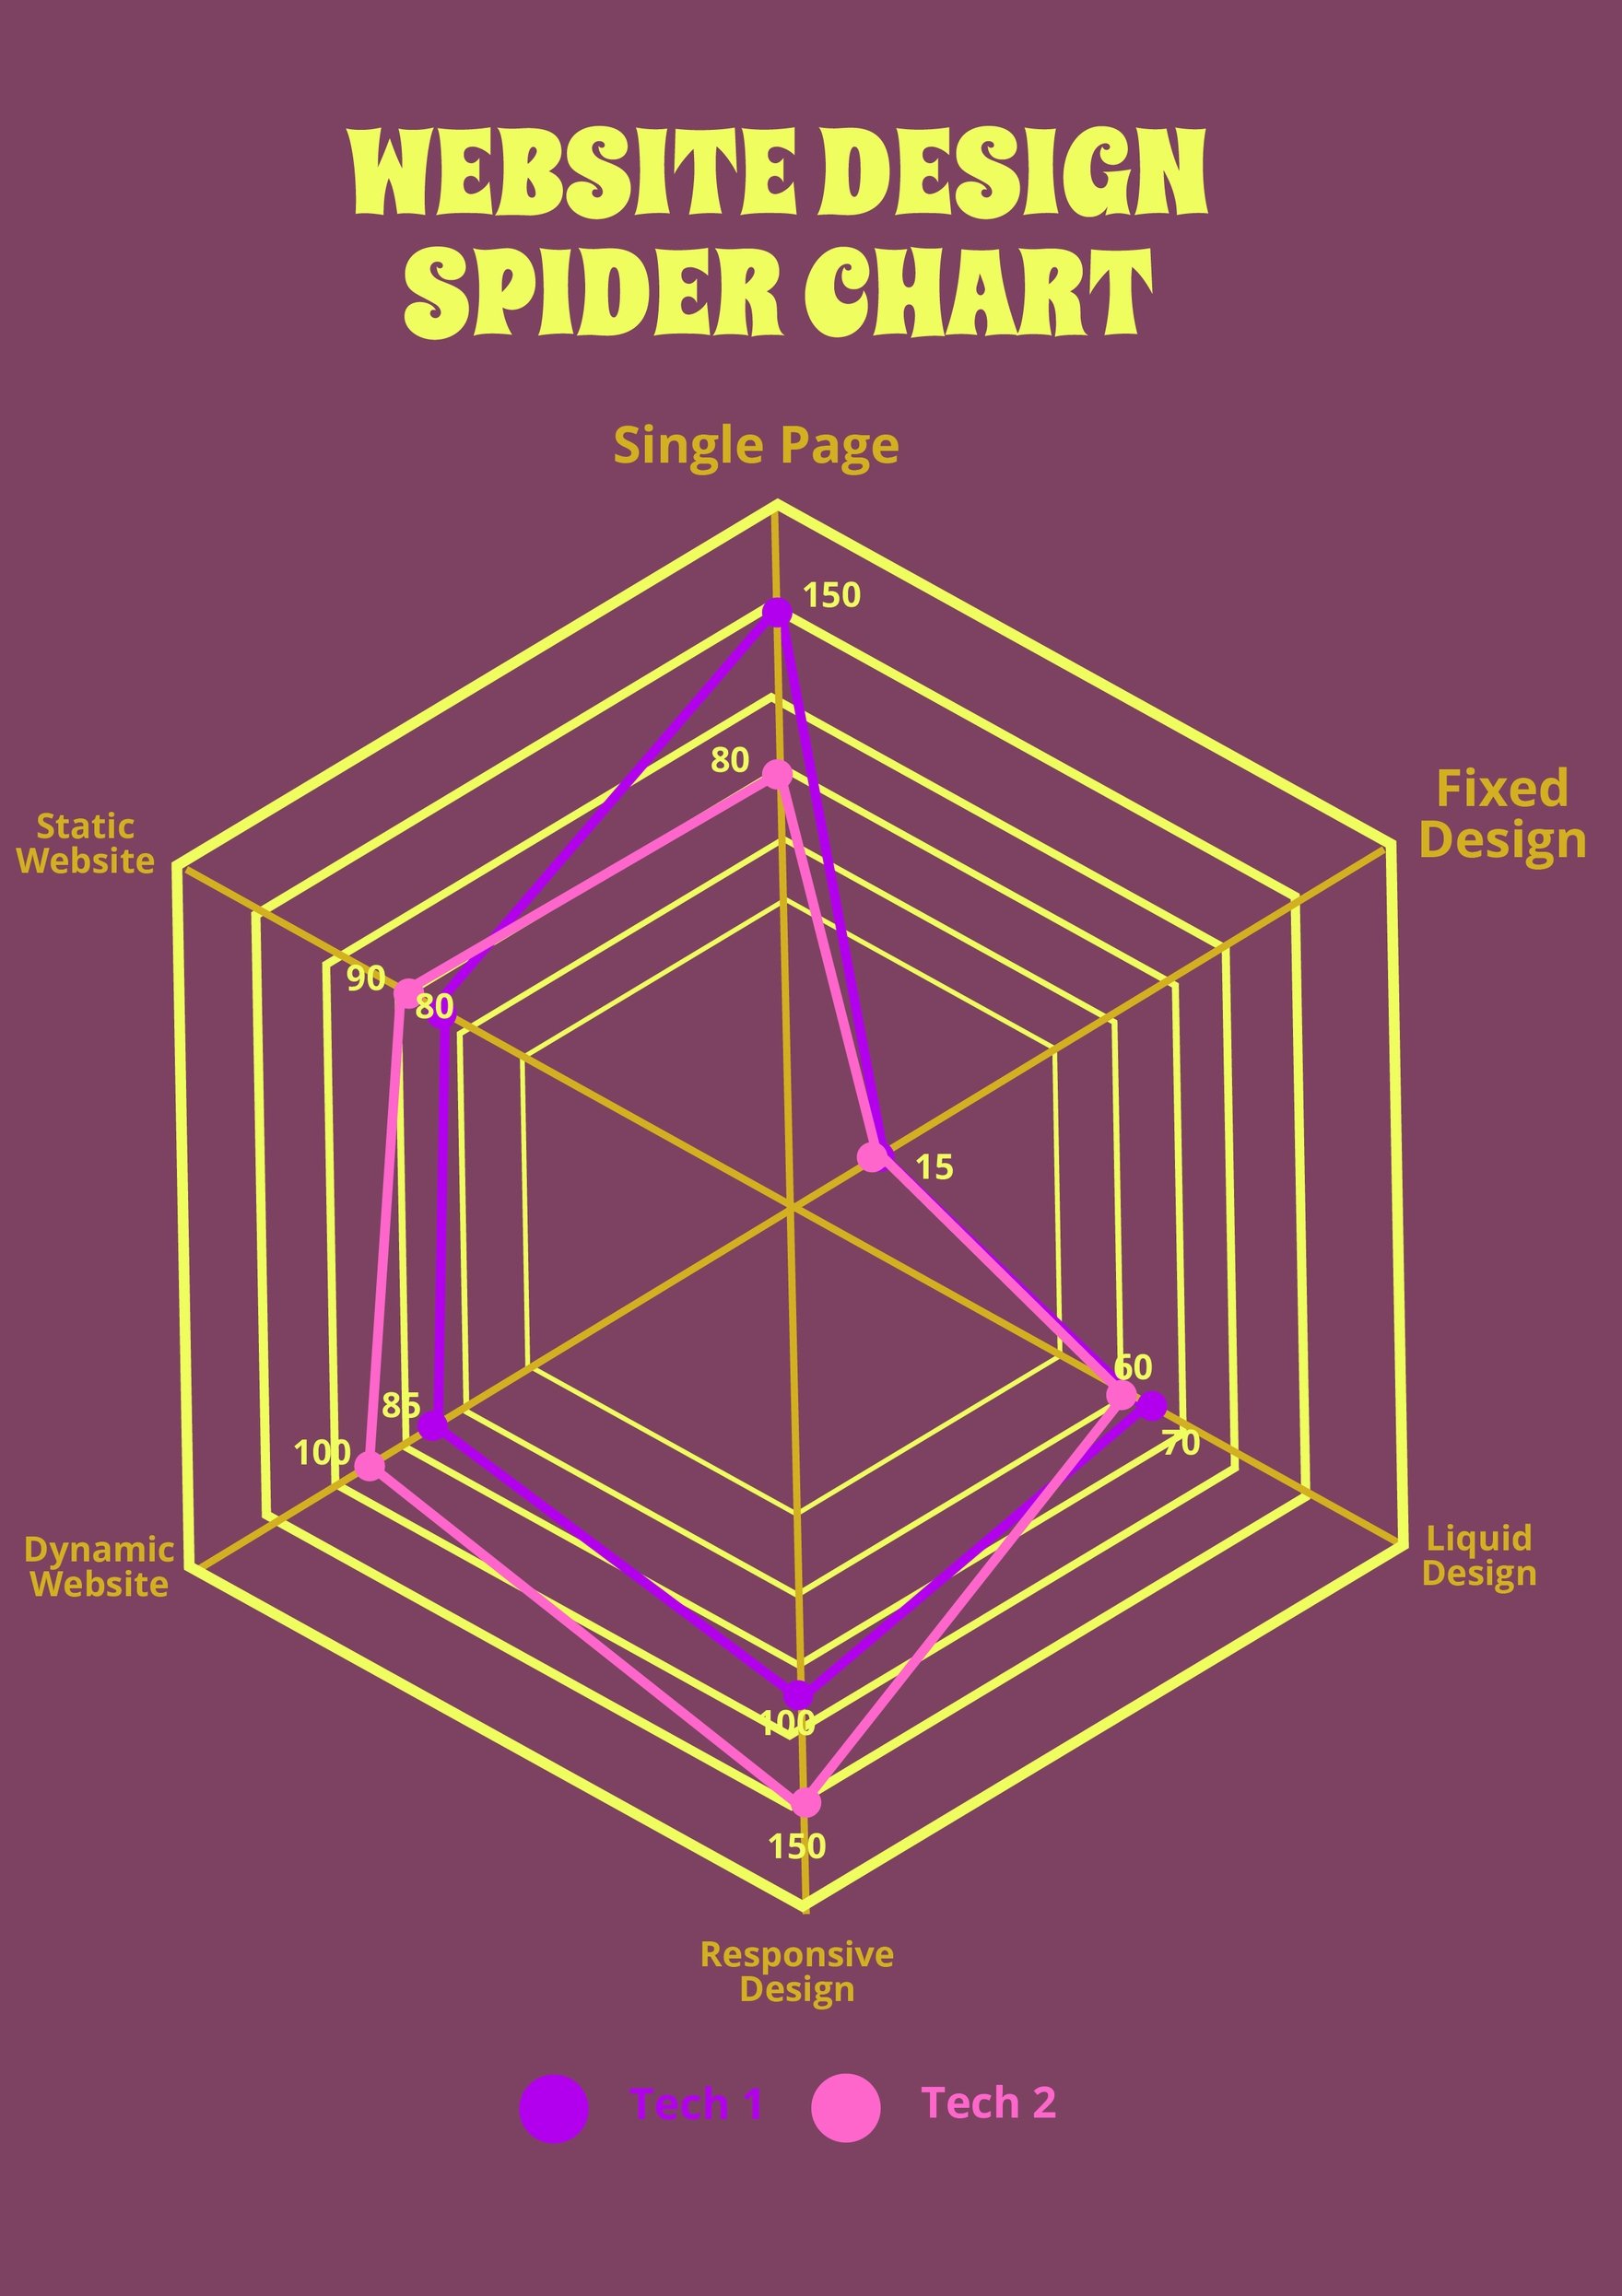 Spider Chart of Website Design in PDF, Illustrator